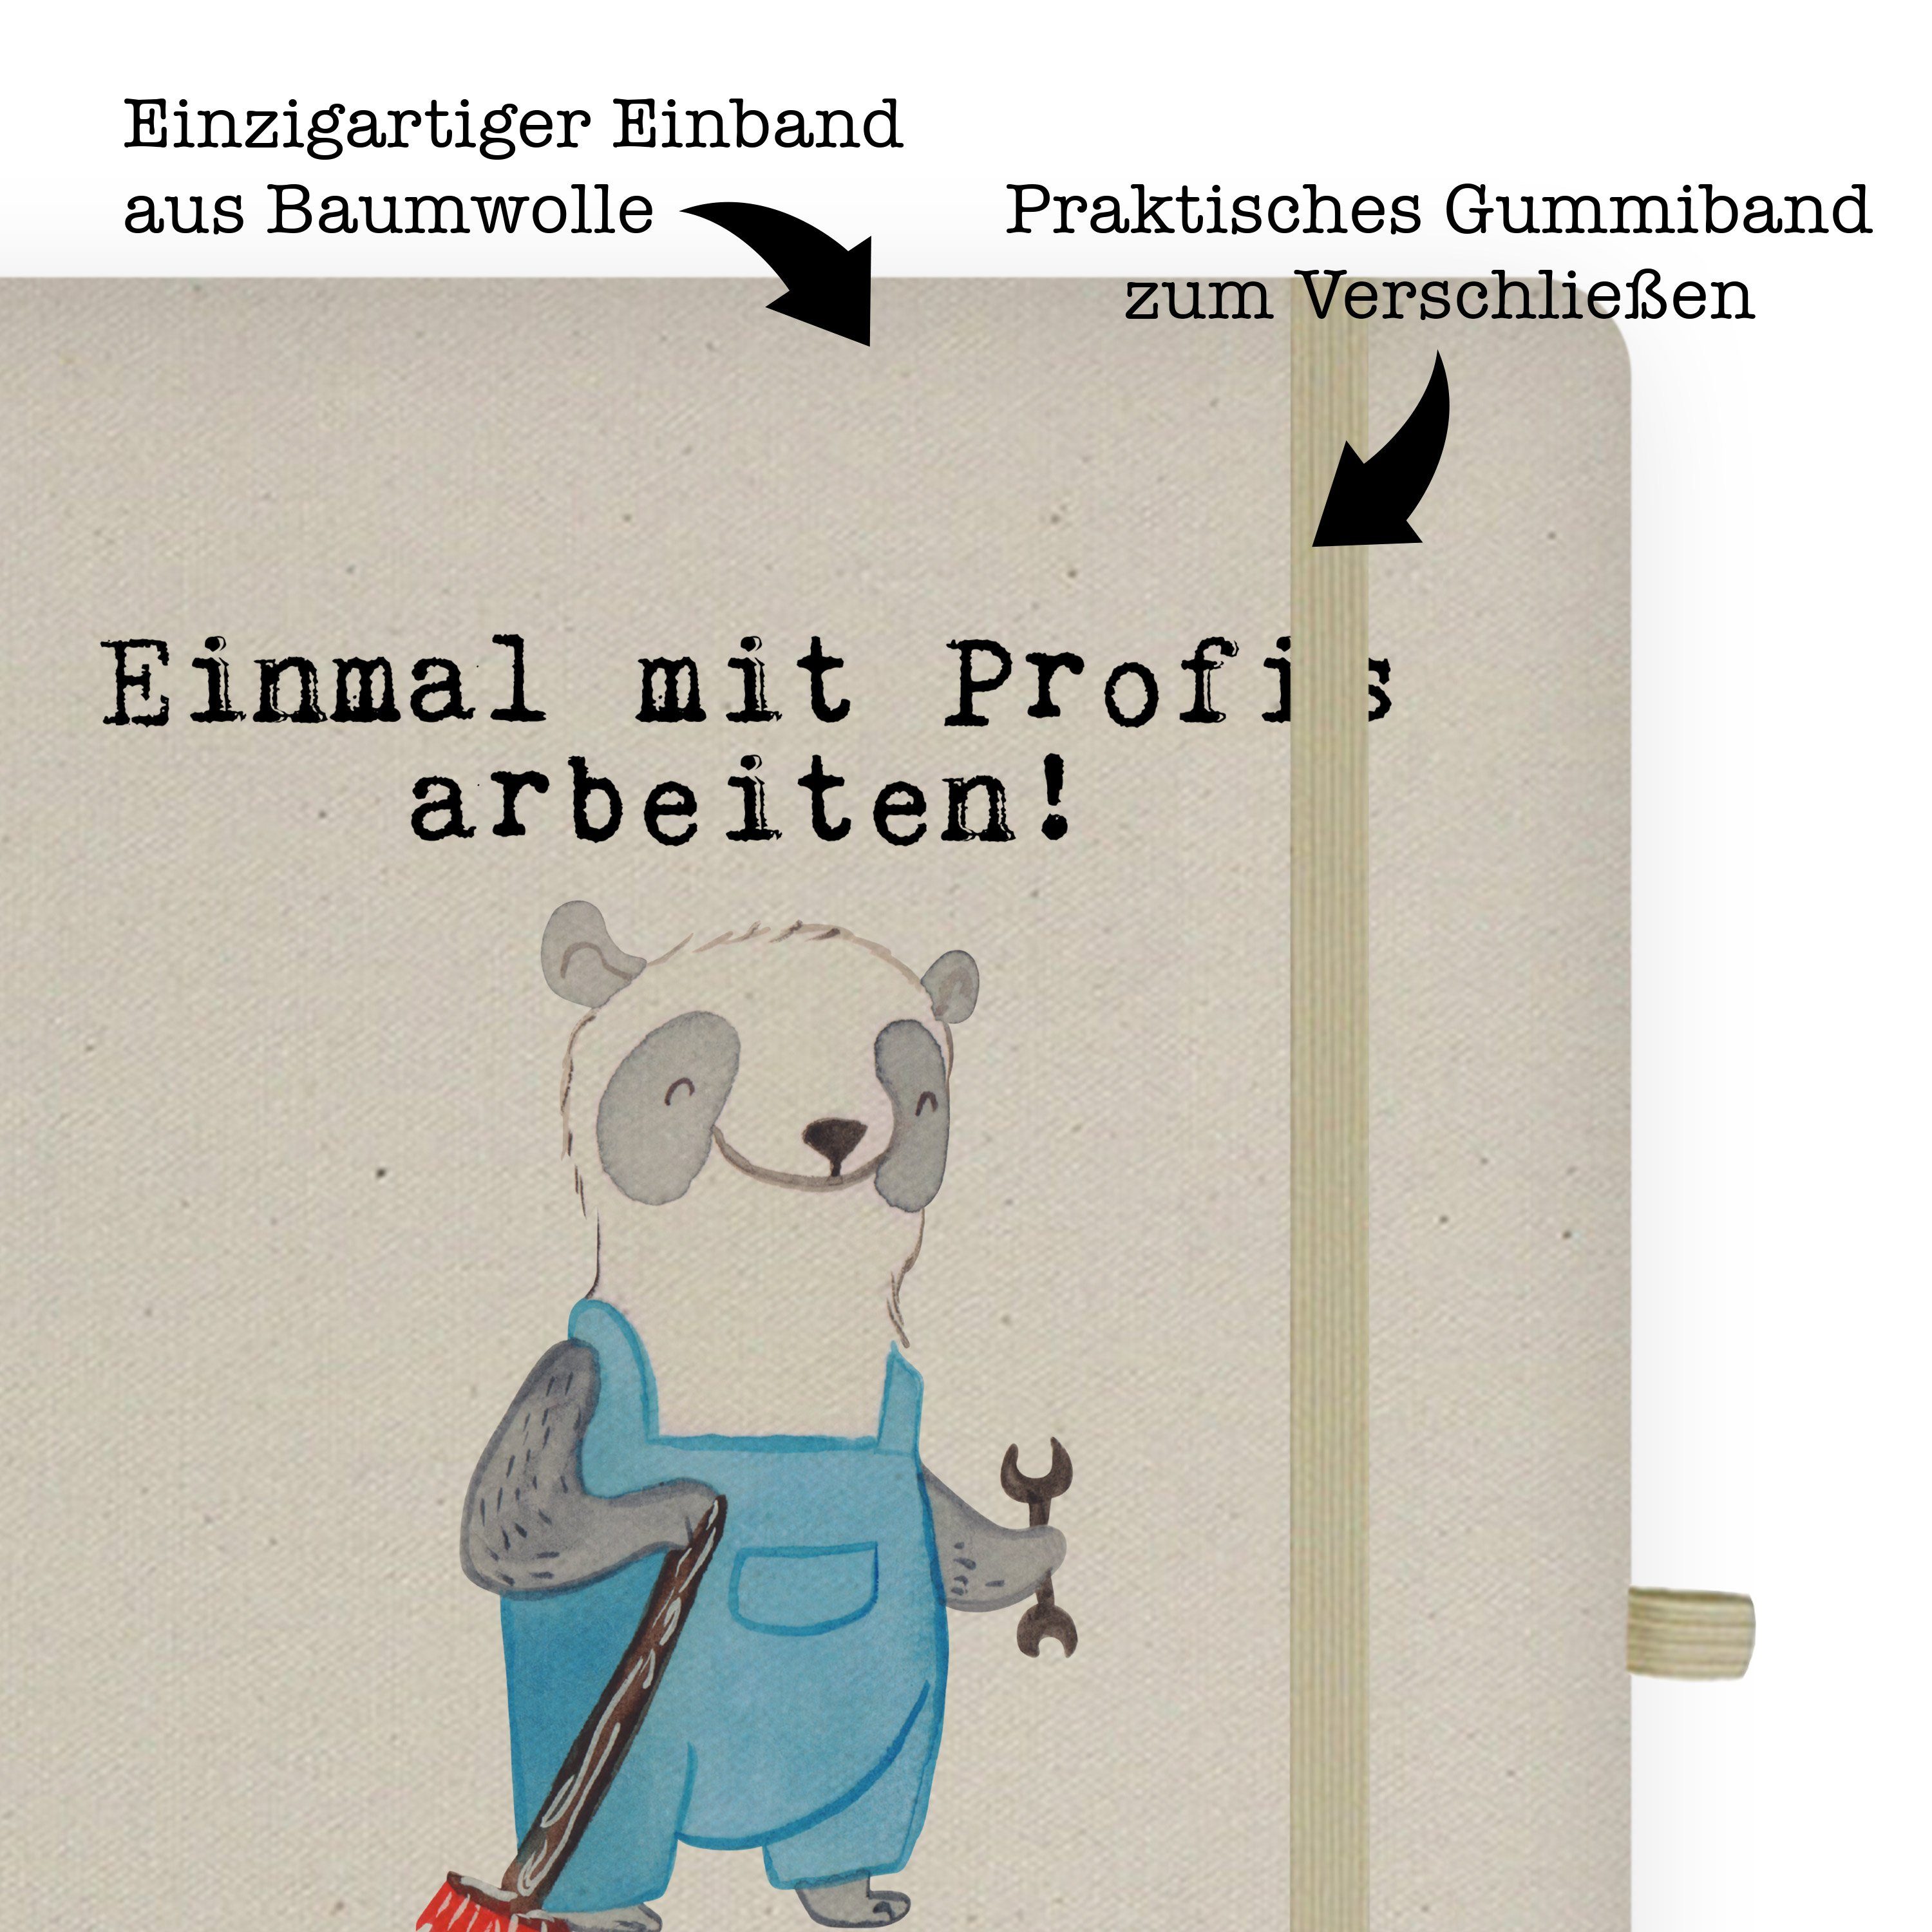 Transparent Panda & - Notizbuch Hausmeister Mrs. Geschenk, Journal, - Mr. Panda aus & Leidenschaft Mr. Skizz Mrs.